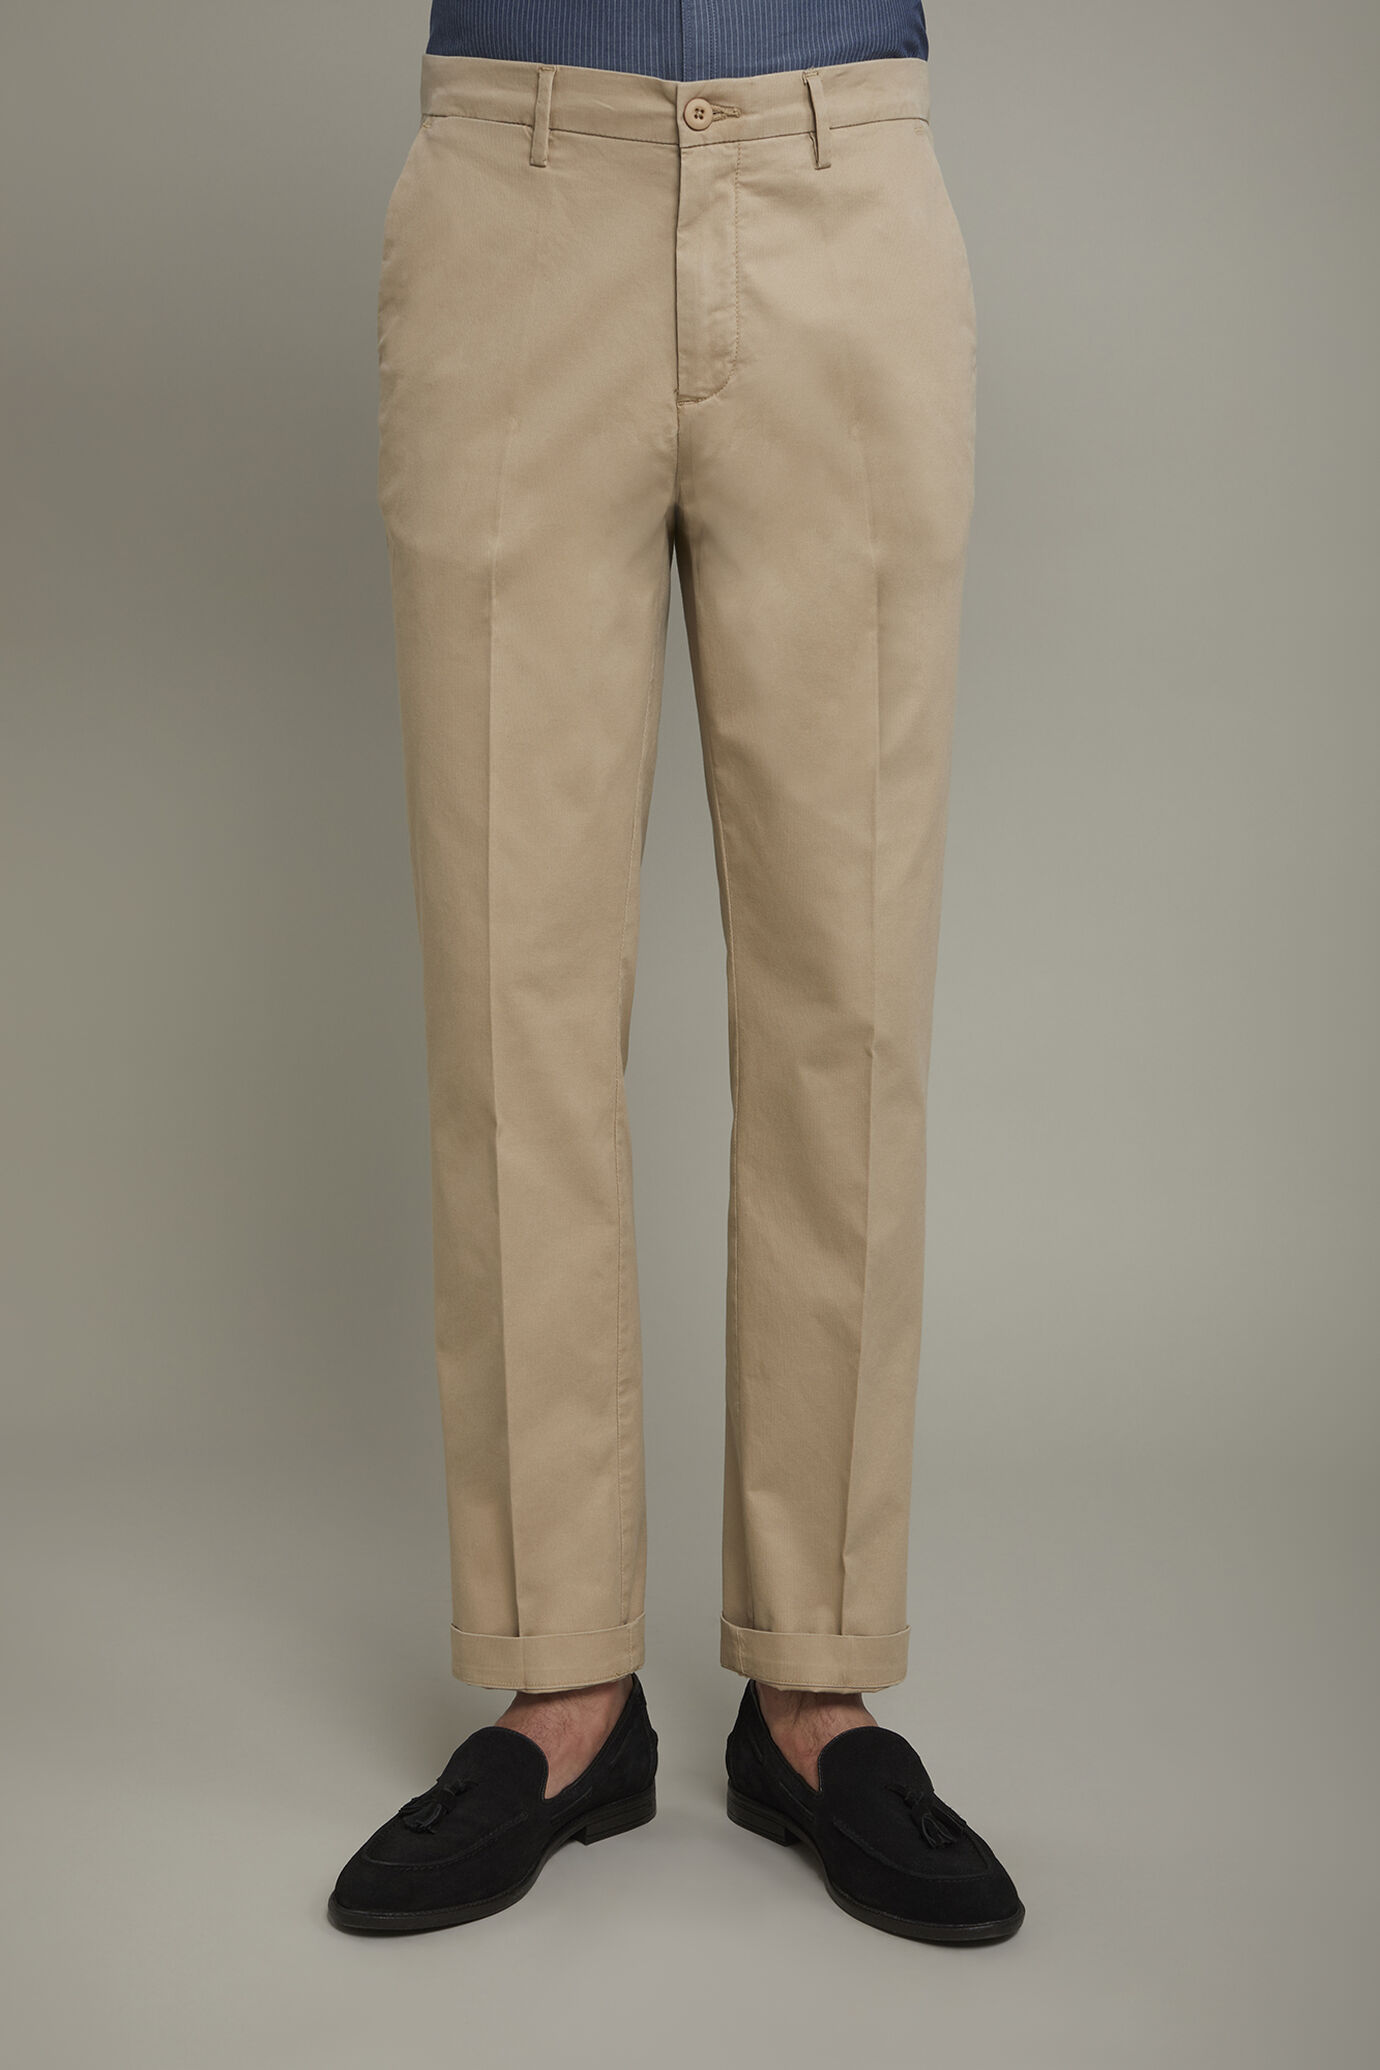 Pantalone uomo classico tessuto in cotone bacchettato tinto in capo regular fit image number 3